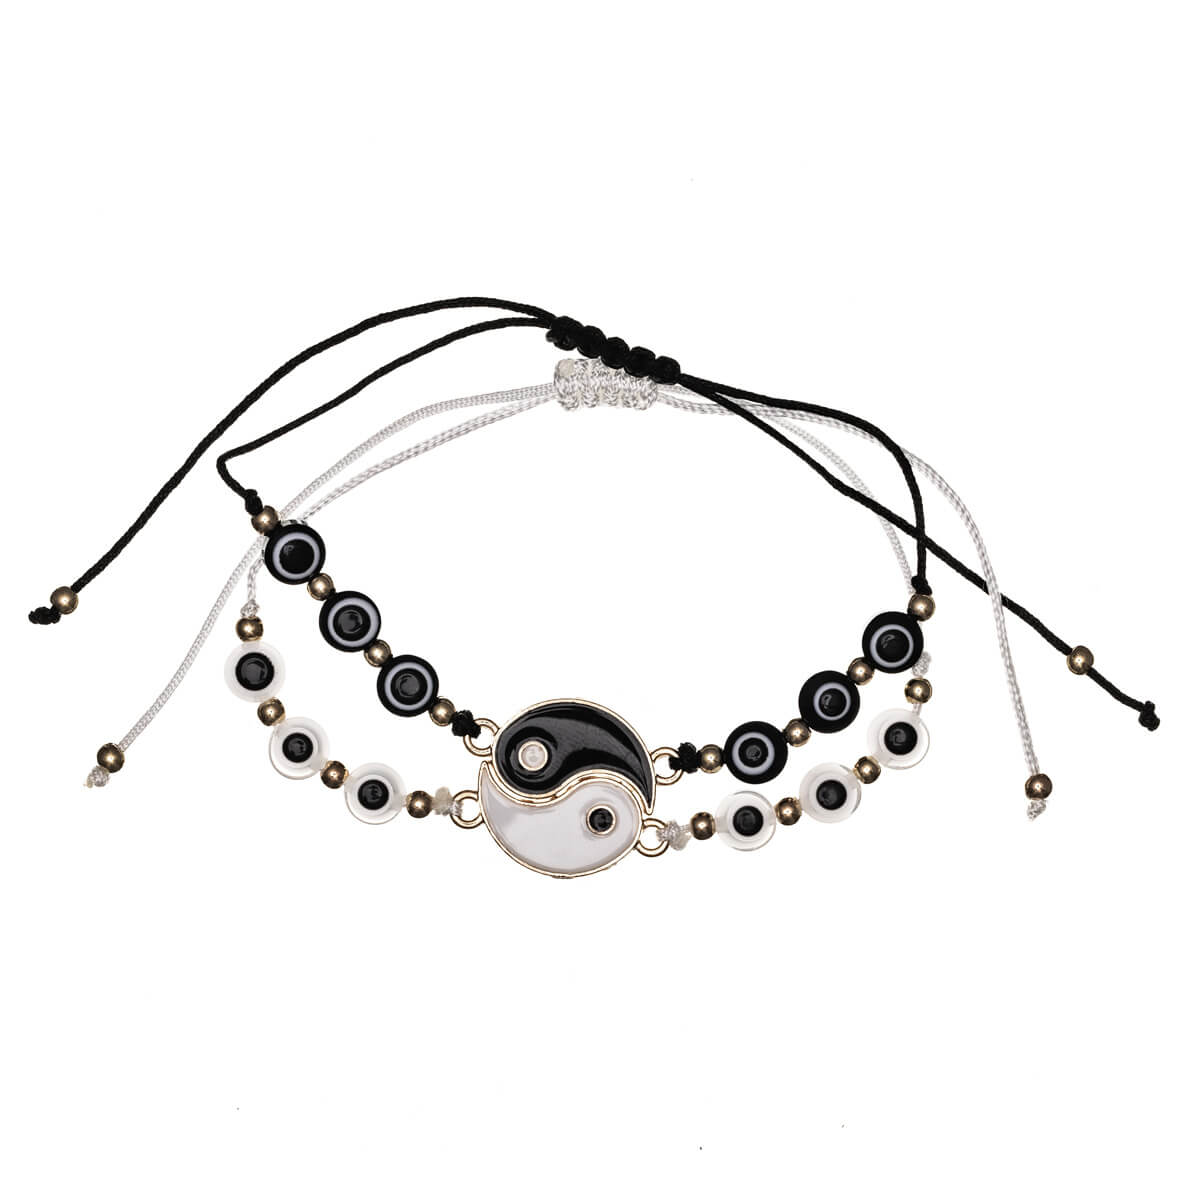 Yin yang friendship bracelet adjustable bracelet 2pcs